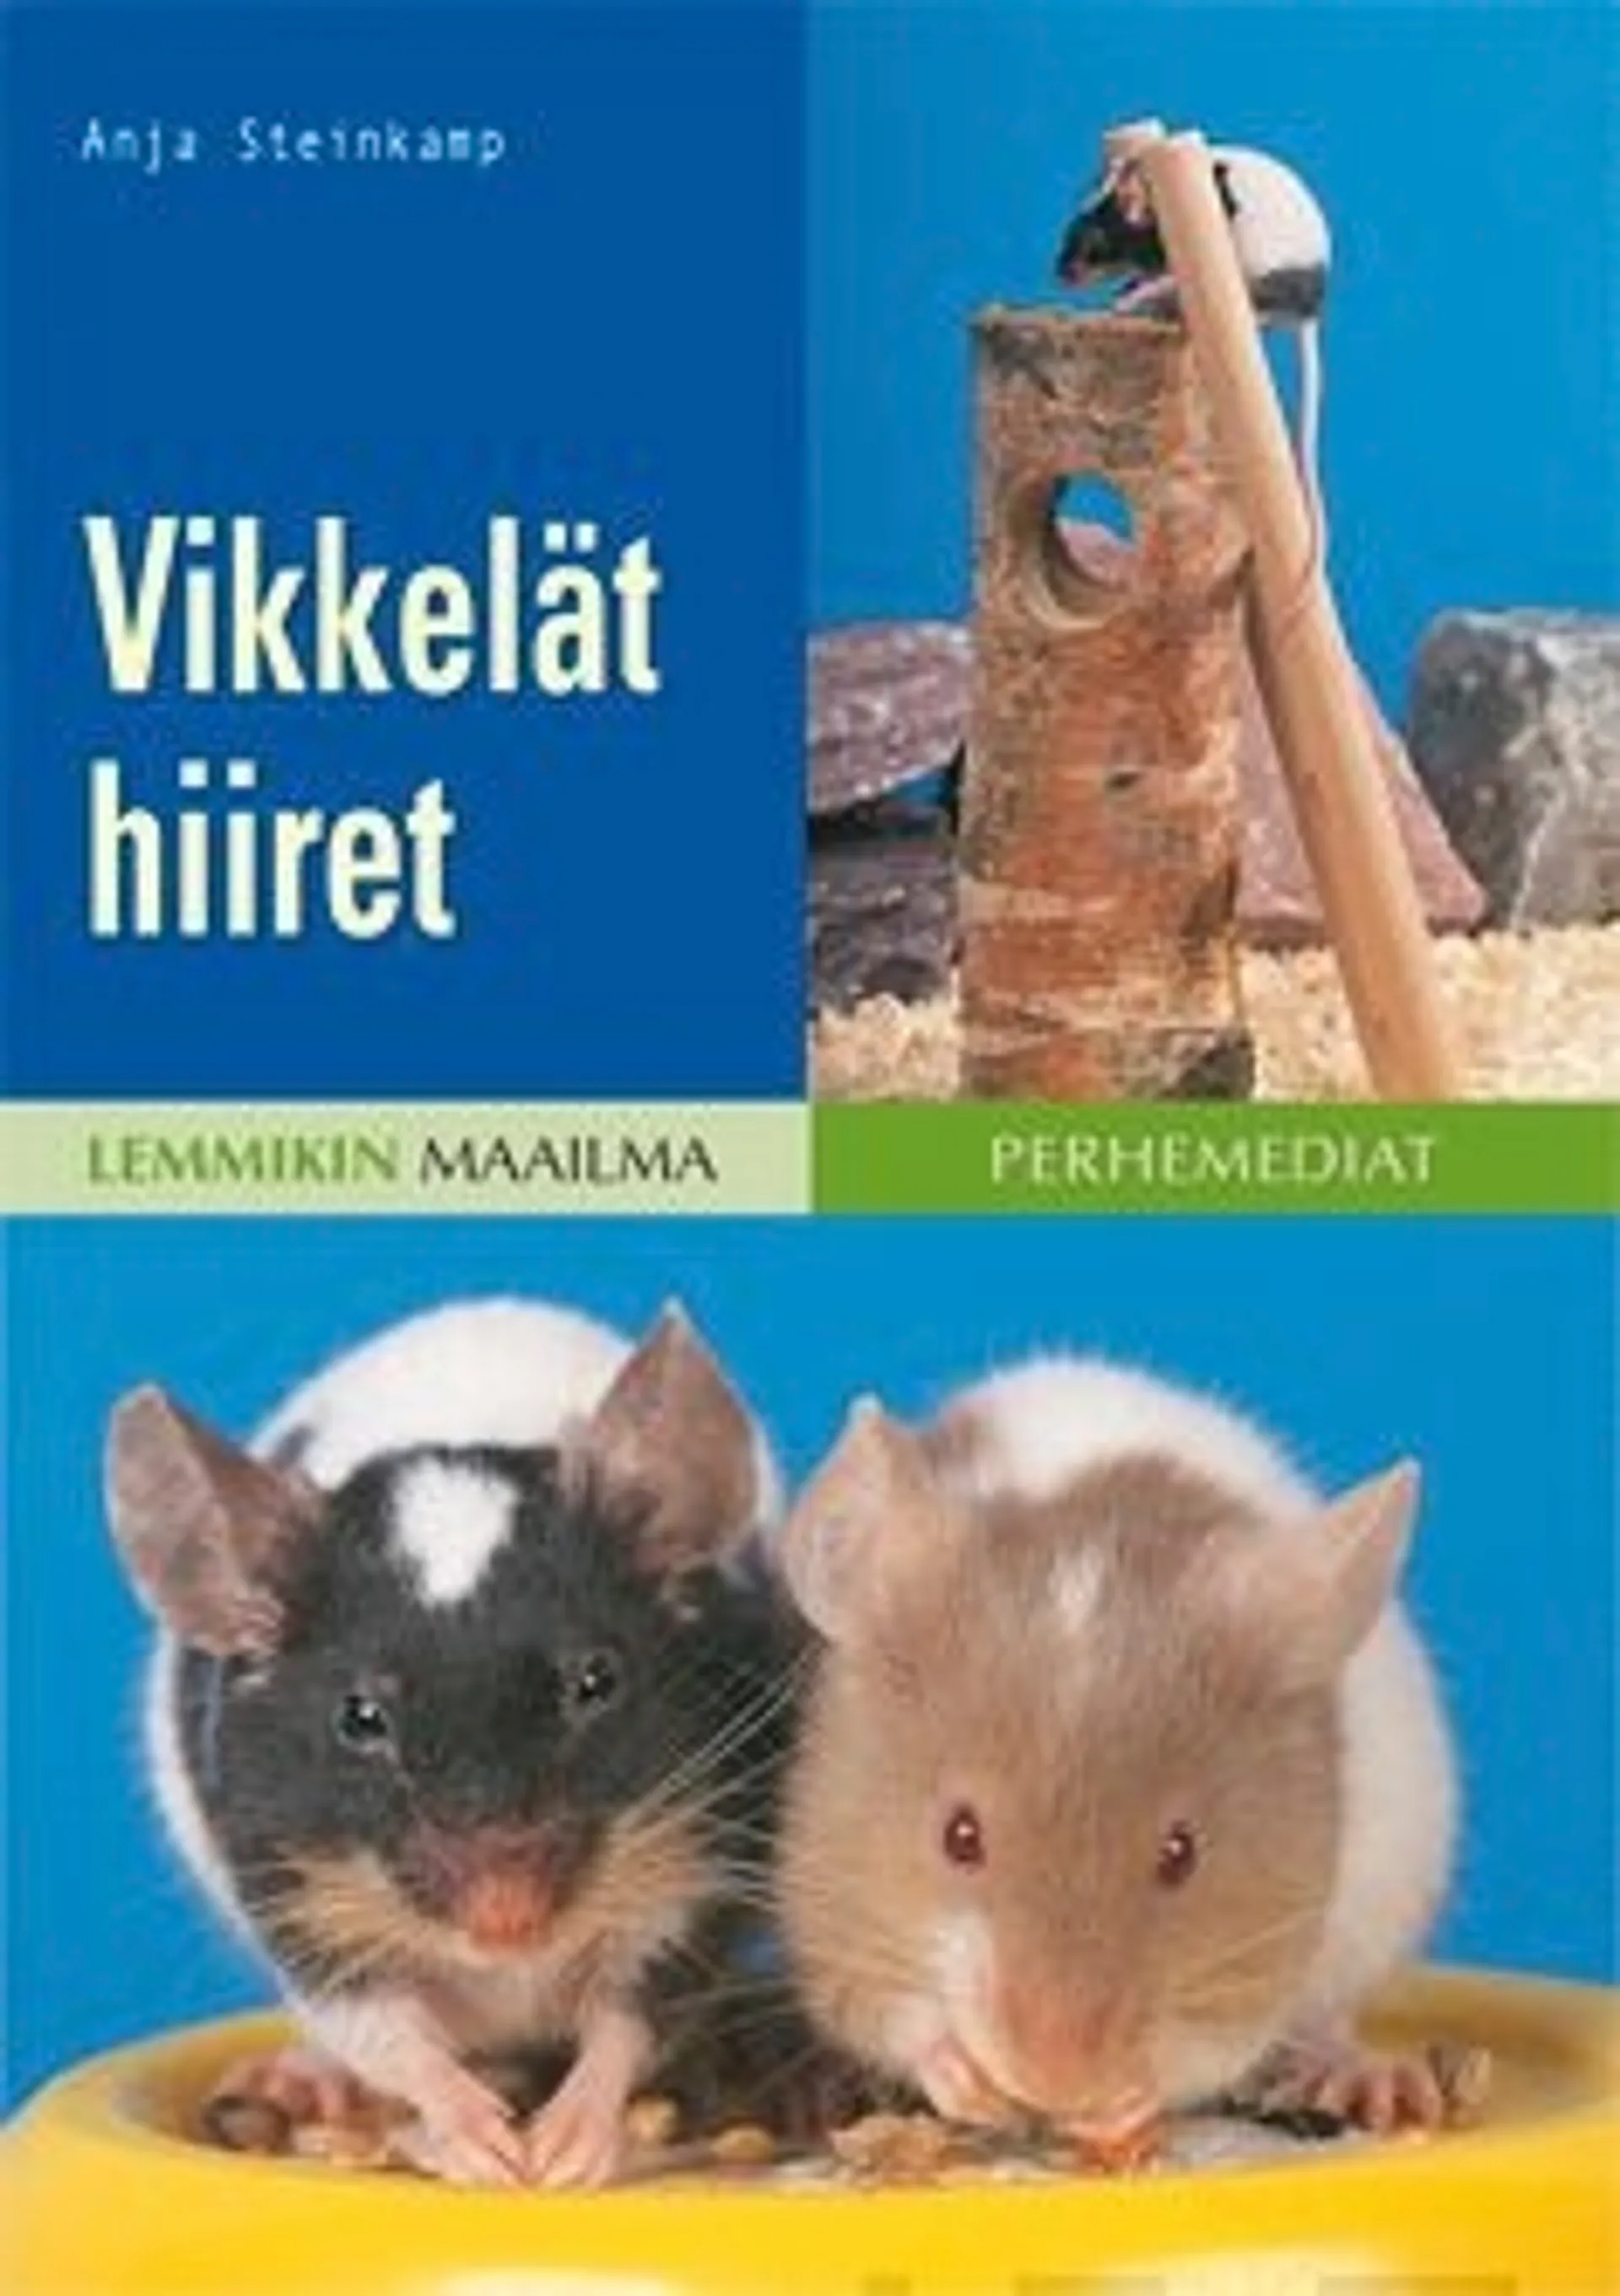 Steinkamp, Vikkelät hiiret